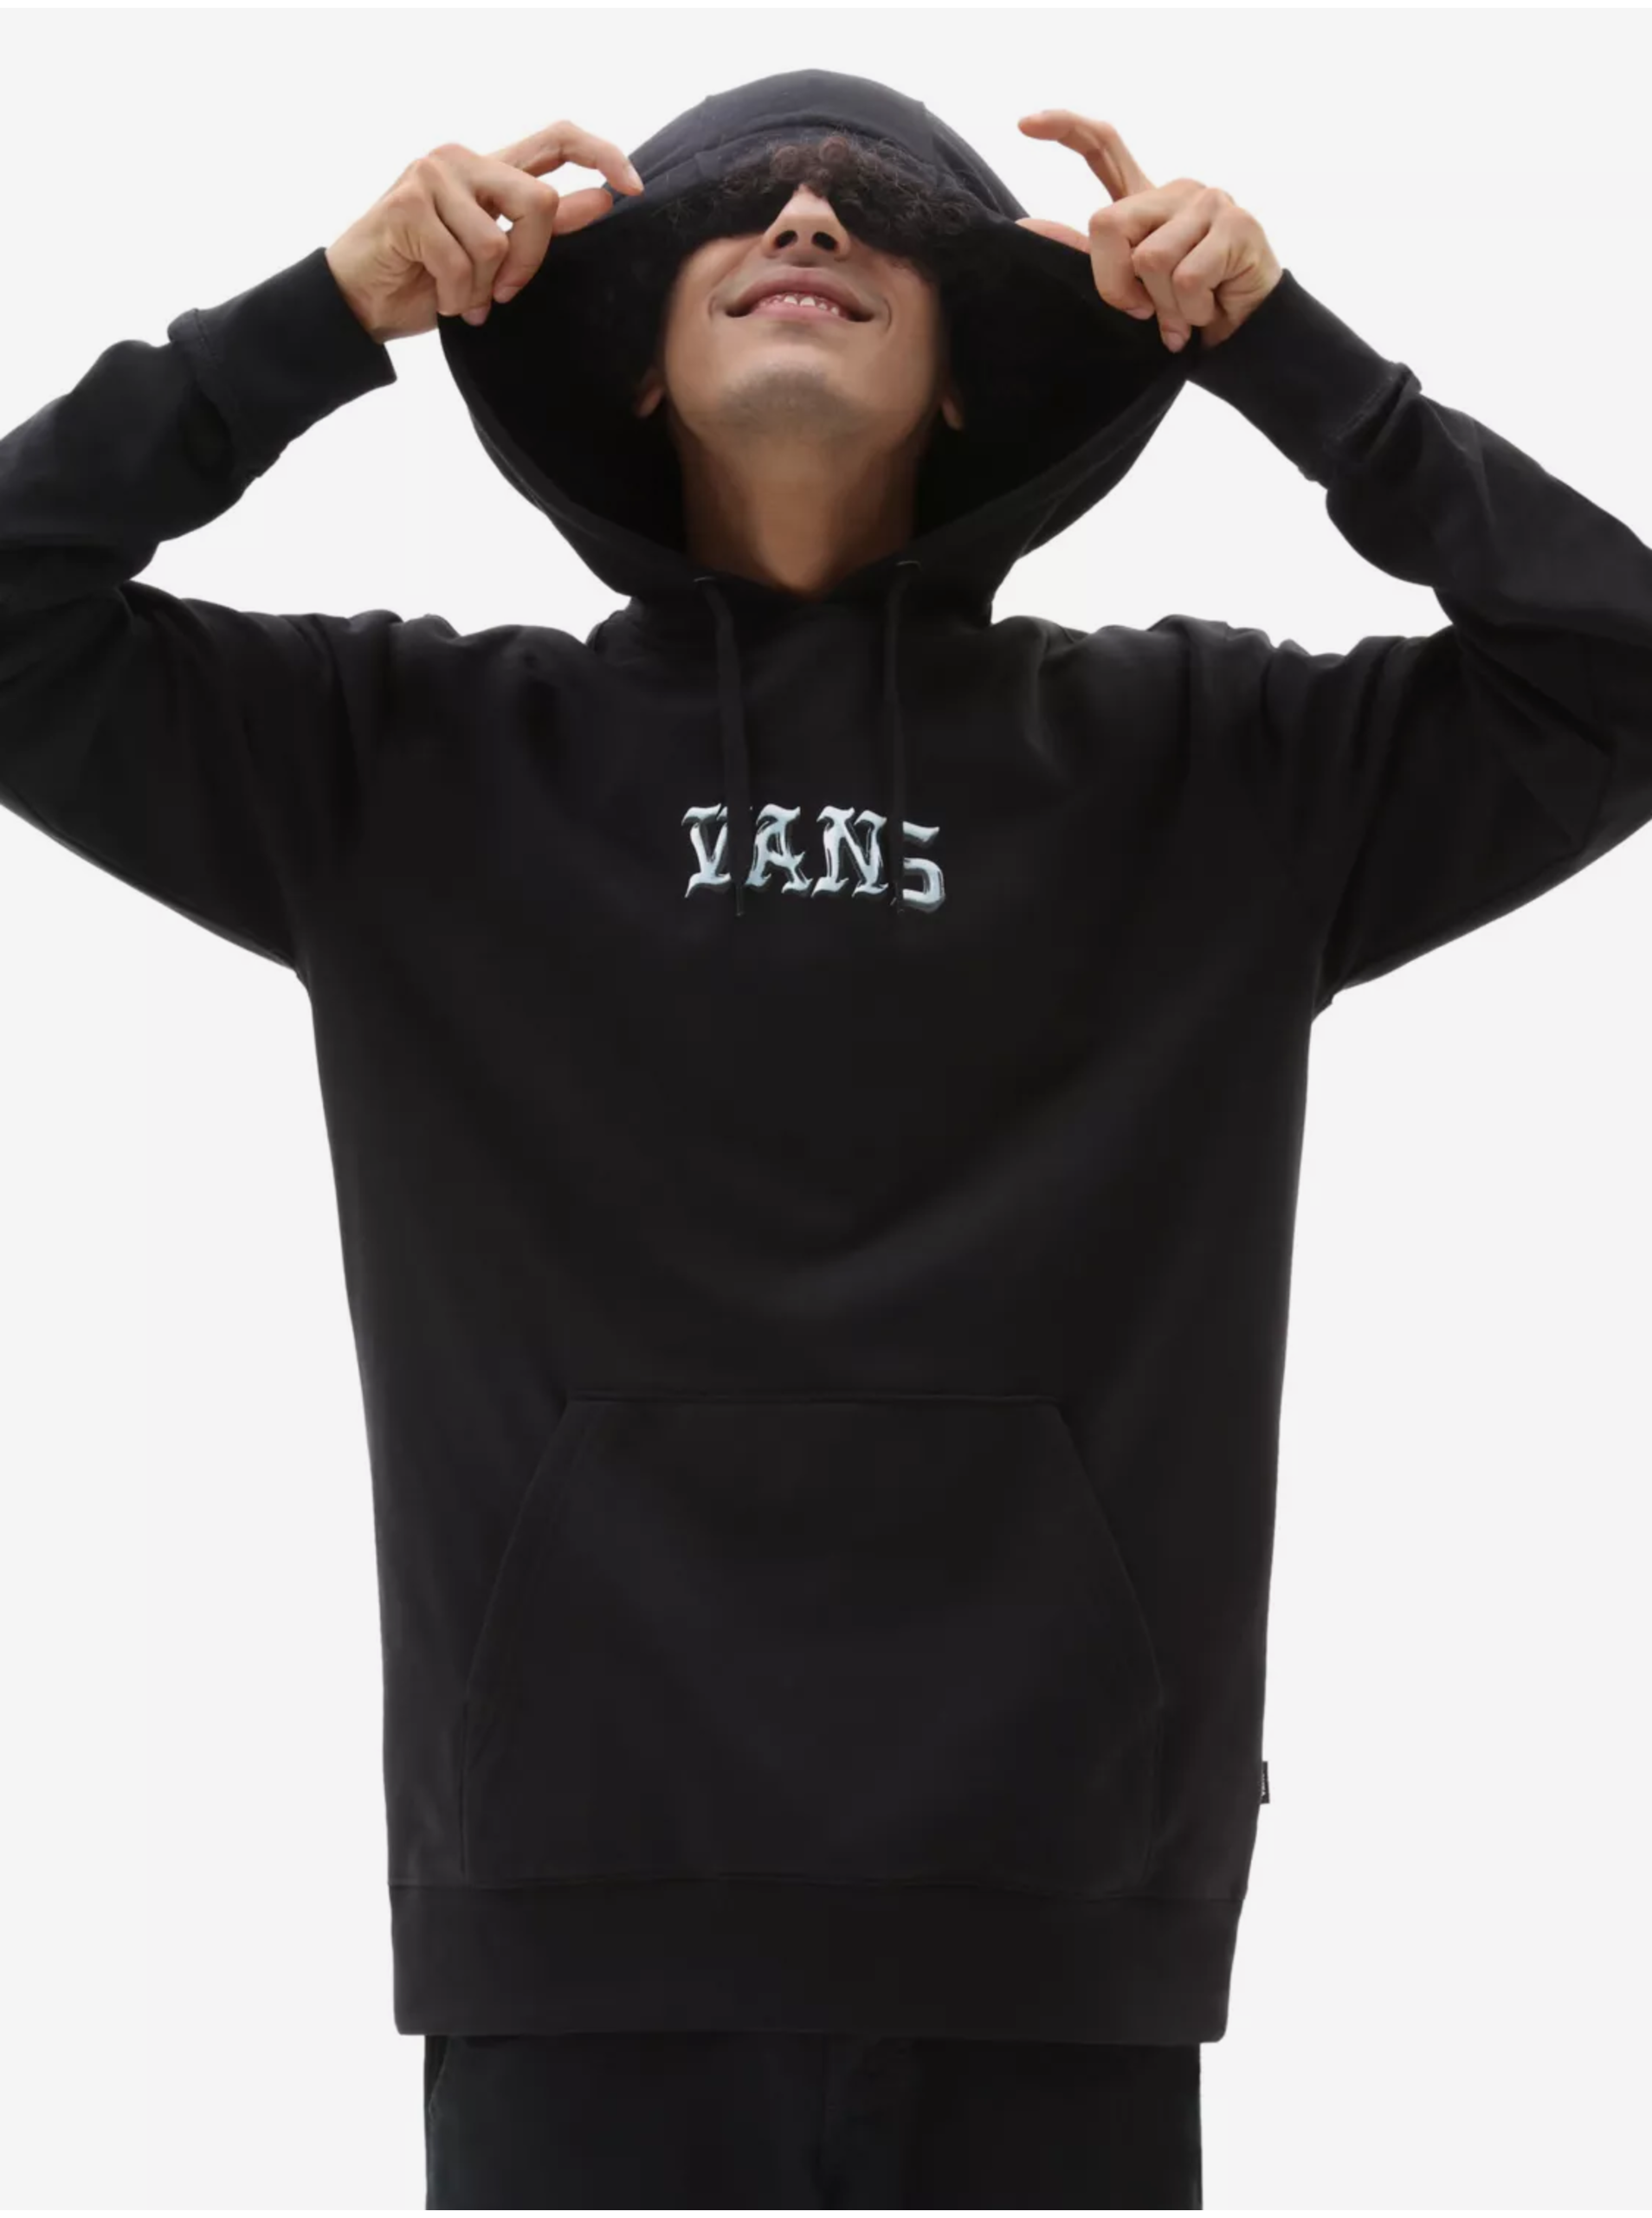 Men's Black Hooded Sweatshirt VANS Crossbones - Men's